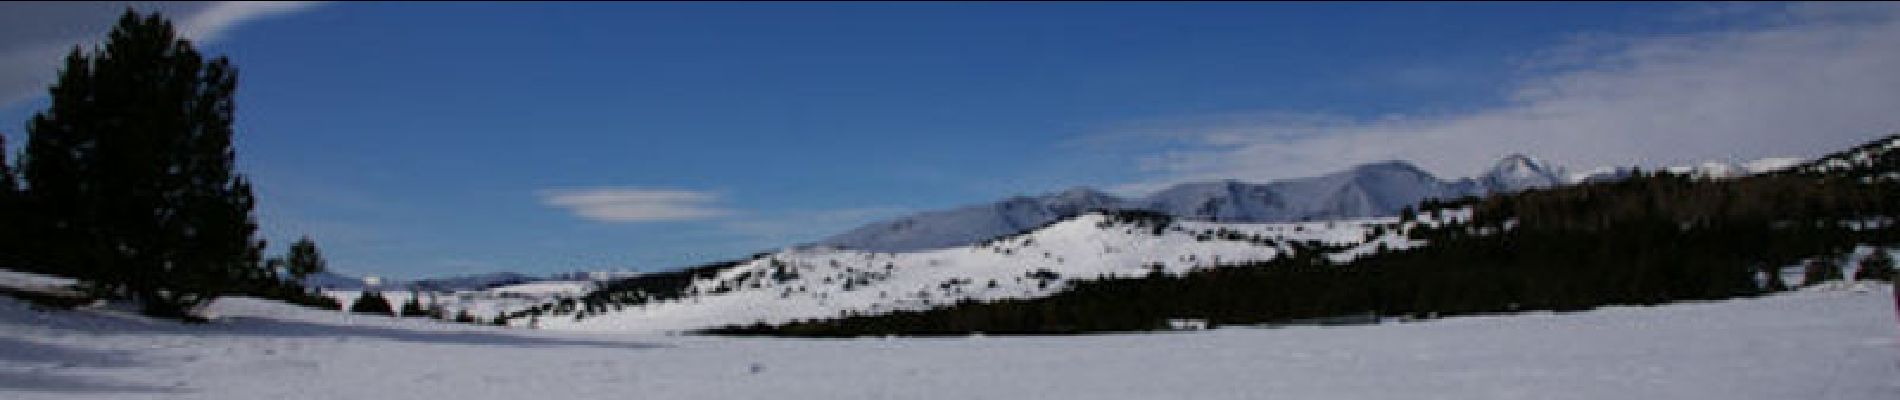 Trail Snowshoes Font-Romeu-Odeillo-Via - Les Airelles - Mollera dels Clots  - Photo